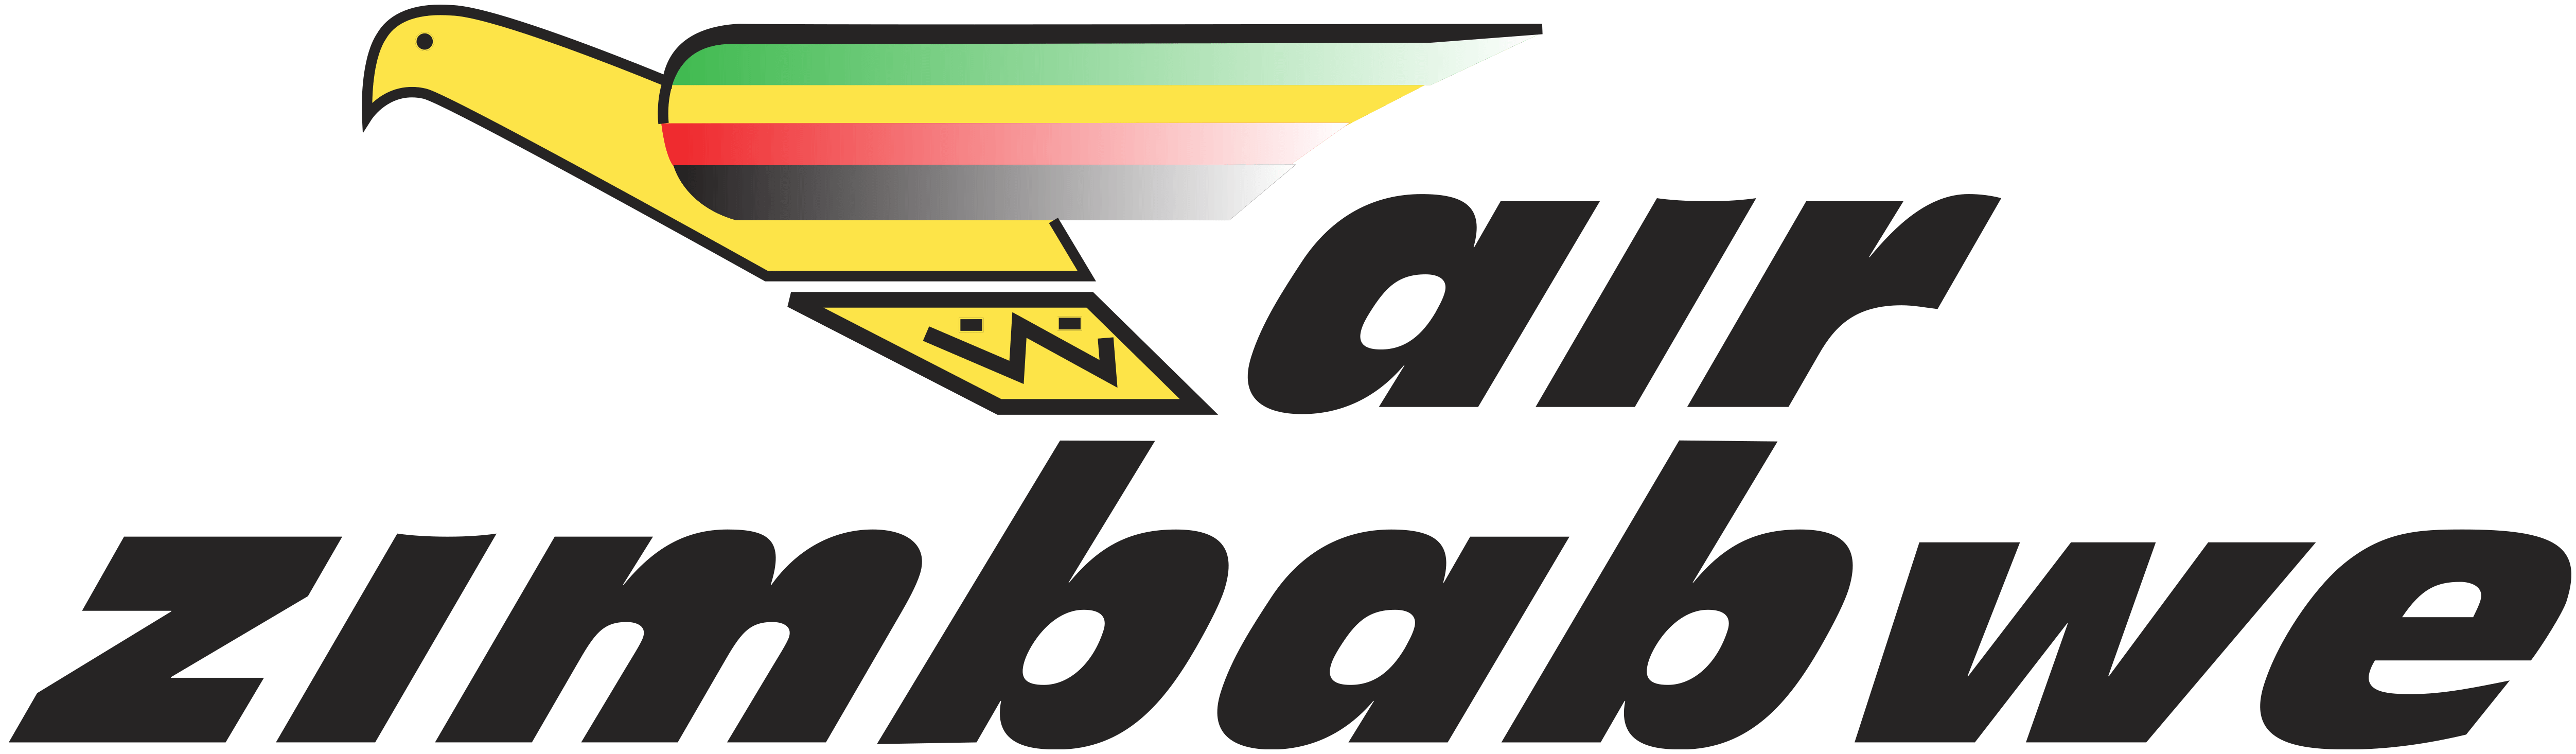 Zimbabwe Logo - Air Zimbabwe - Pindula